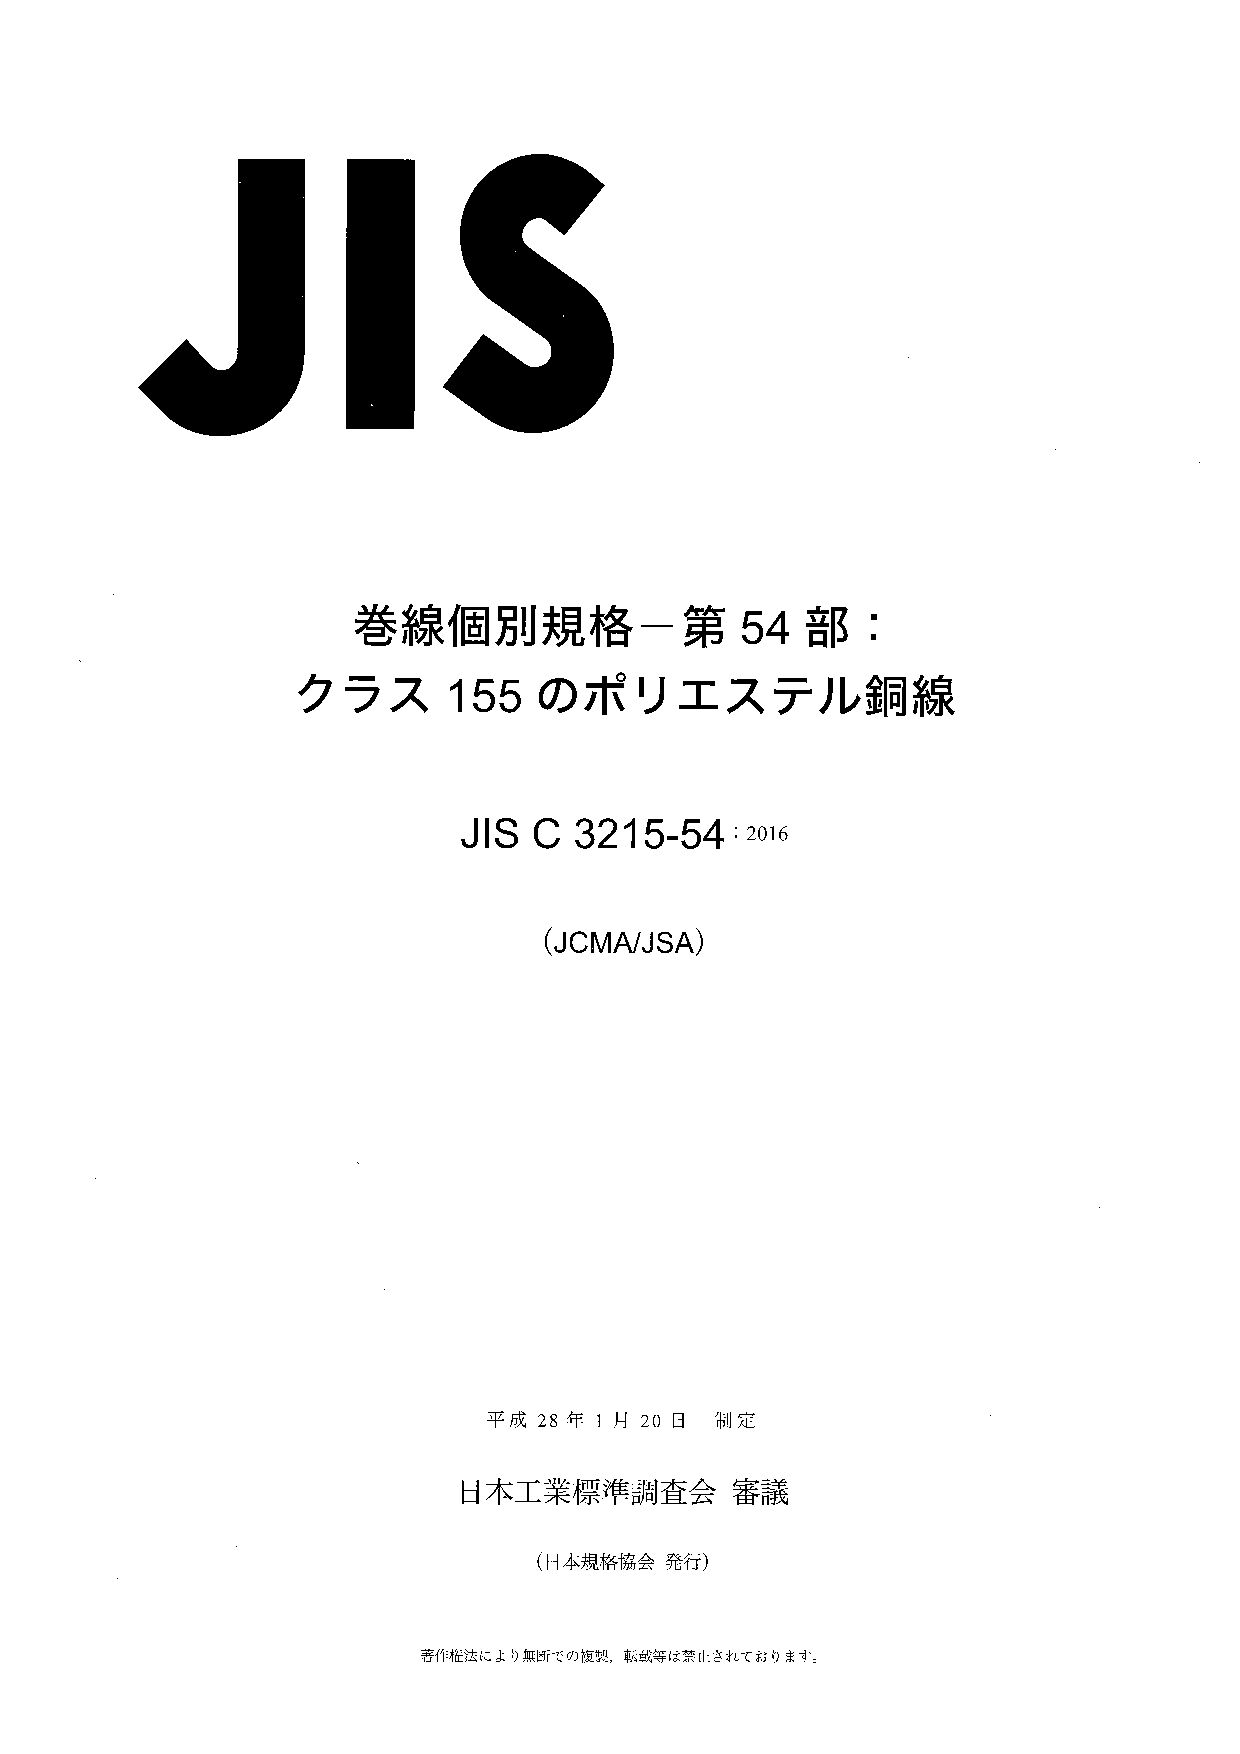 JIS C 3215-54:2016封面图